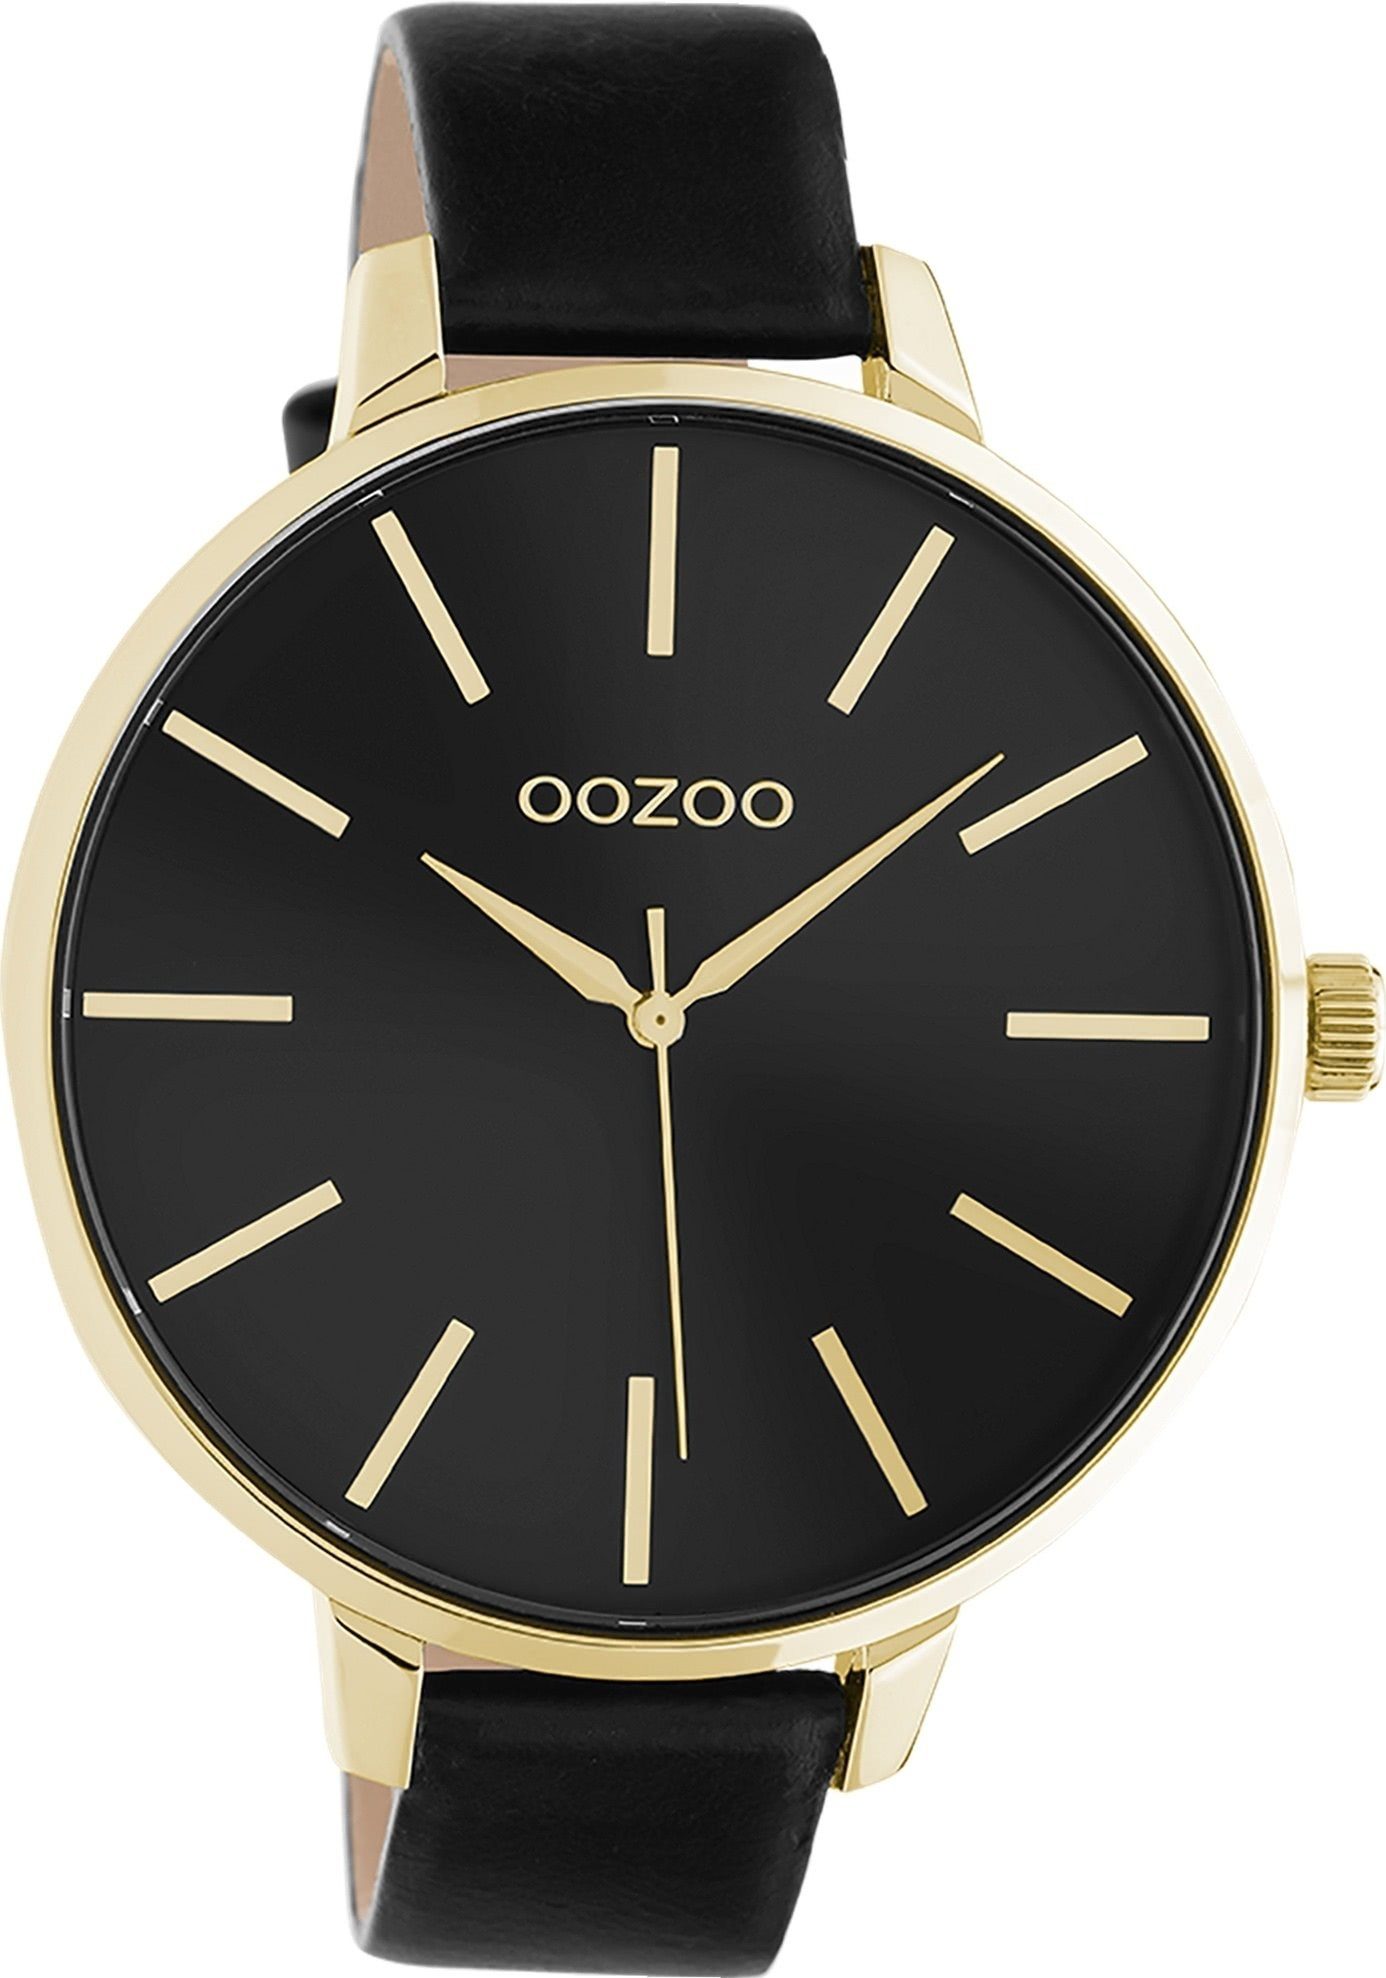 OOZOO Quarzuhr Oozoo Damen Armbanduhr OOZOO Timepieces, Damenuhr rund, extra groß (ca. 48mm), Lederarmband schwarz, Fashion